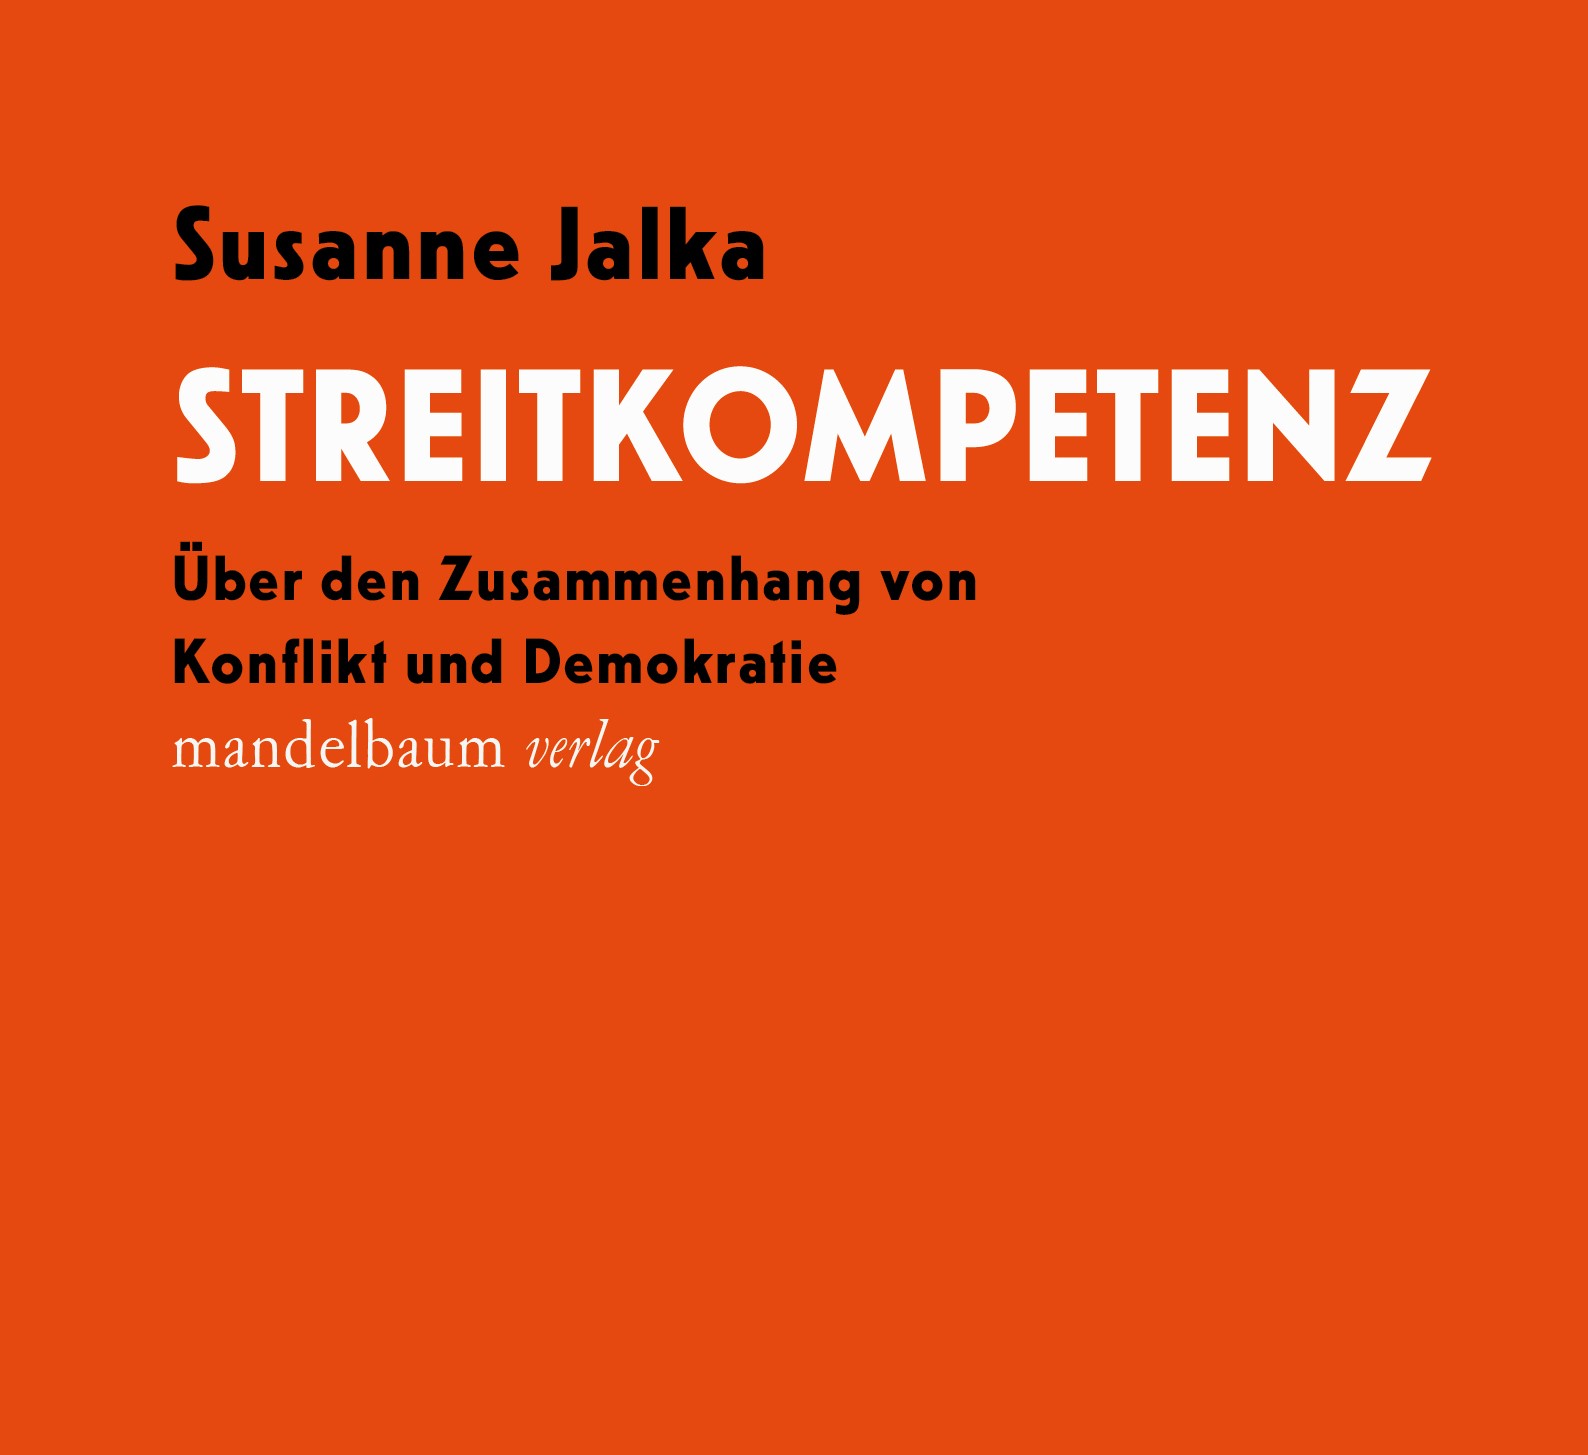 Susanne Jalka: Streitkompetenz